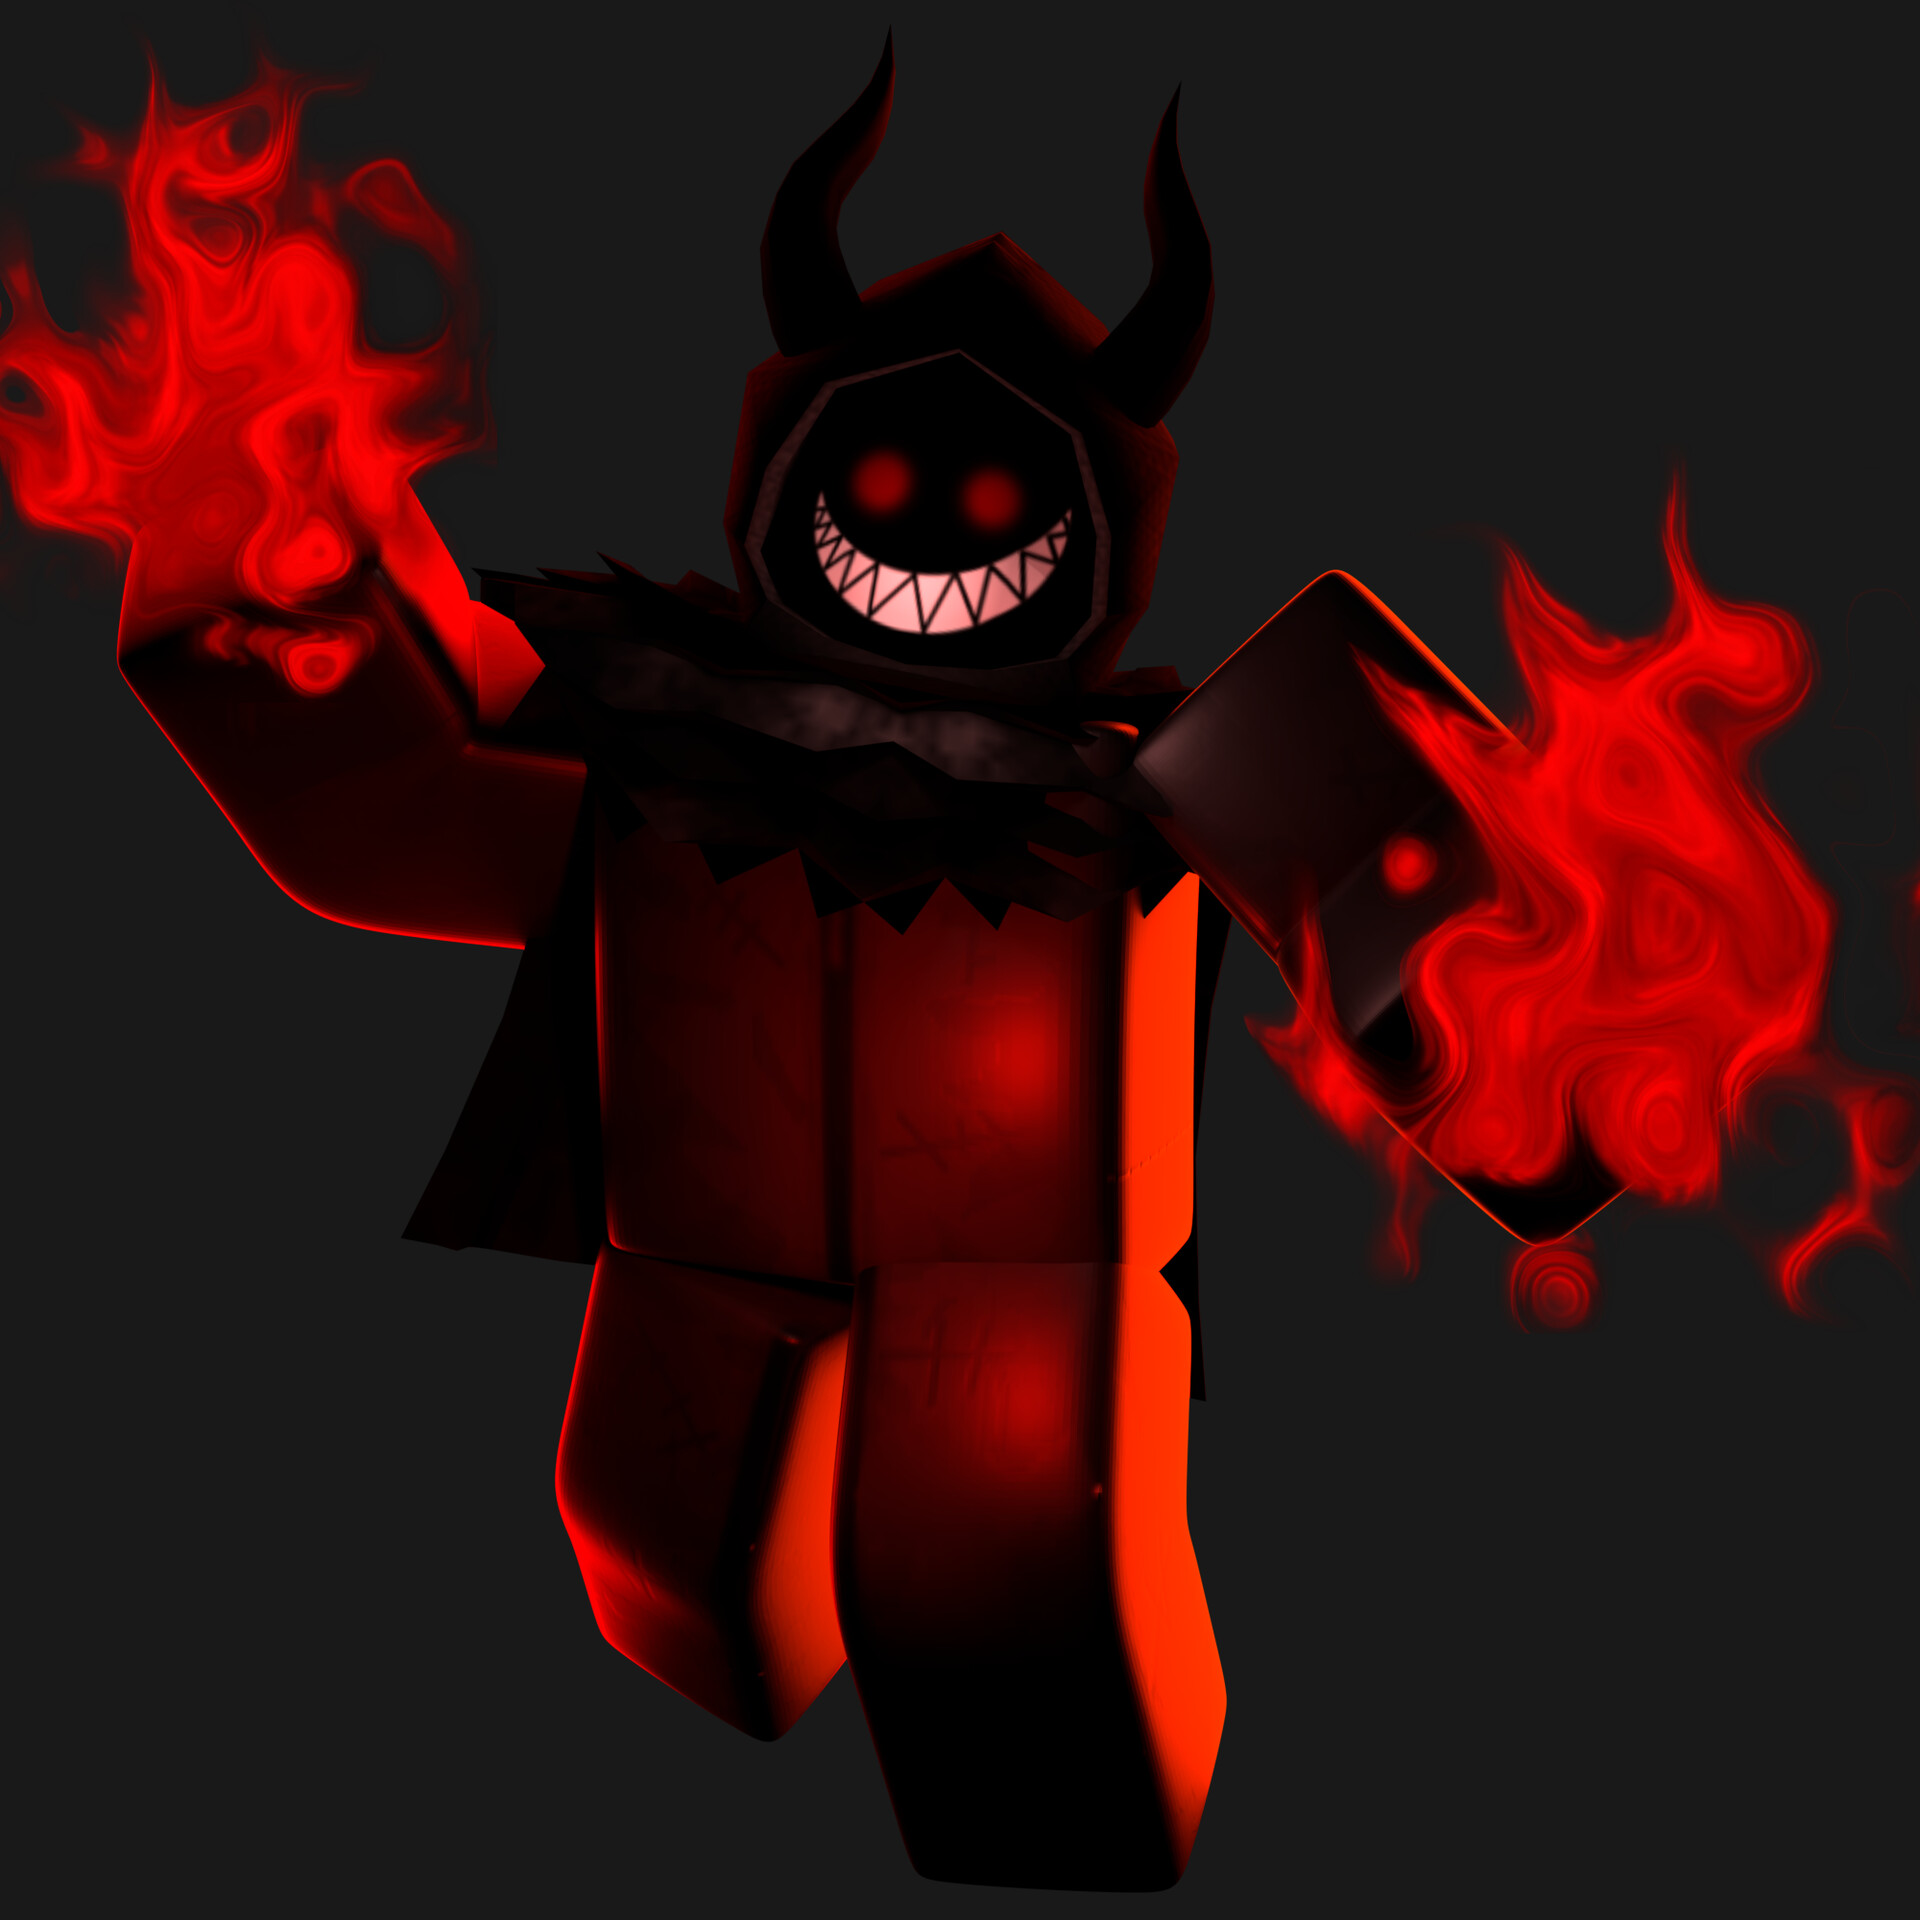 Với hình dạng quỷ đỏ HellFire, avatar Roblox của bạn sẽ thực sự nổi bật và độc đáo. Hãy ghé thăm ArtStation để xem chi tiết về hình ảnh này và cập nhật avatar của mình ngay hôm nay!